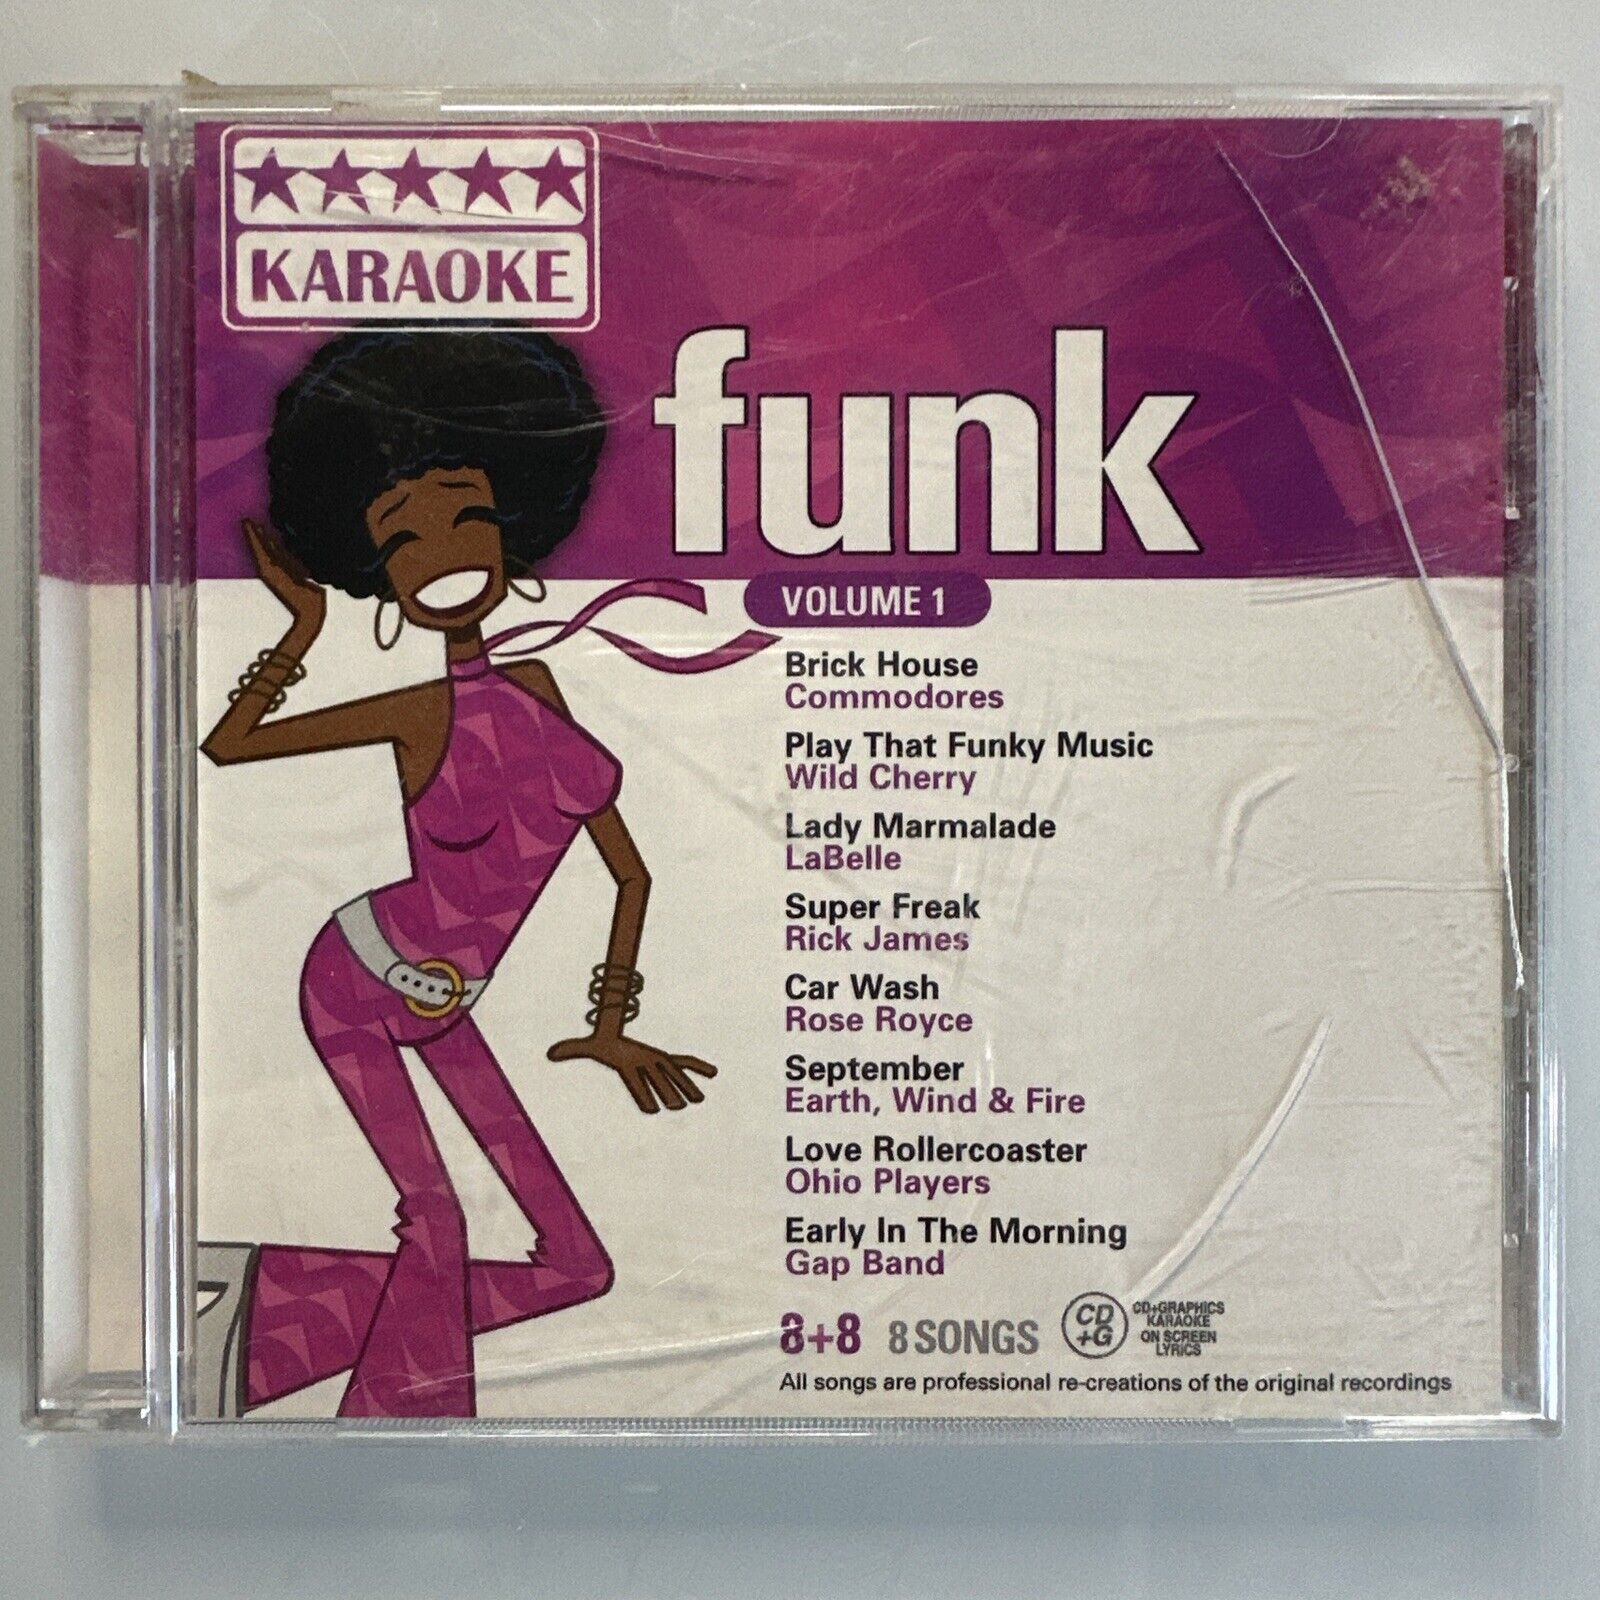 Karaoke Funk Volume 1 CD